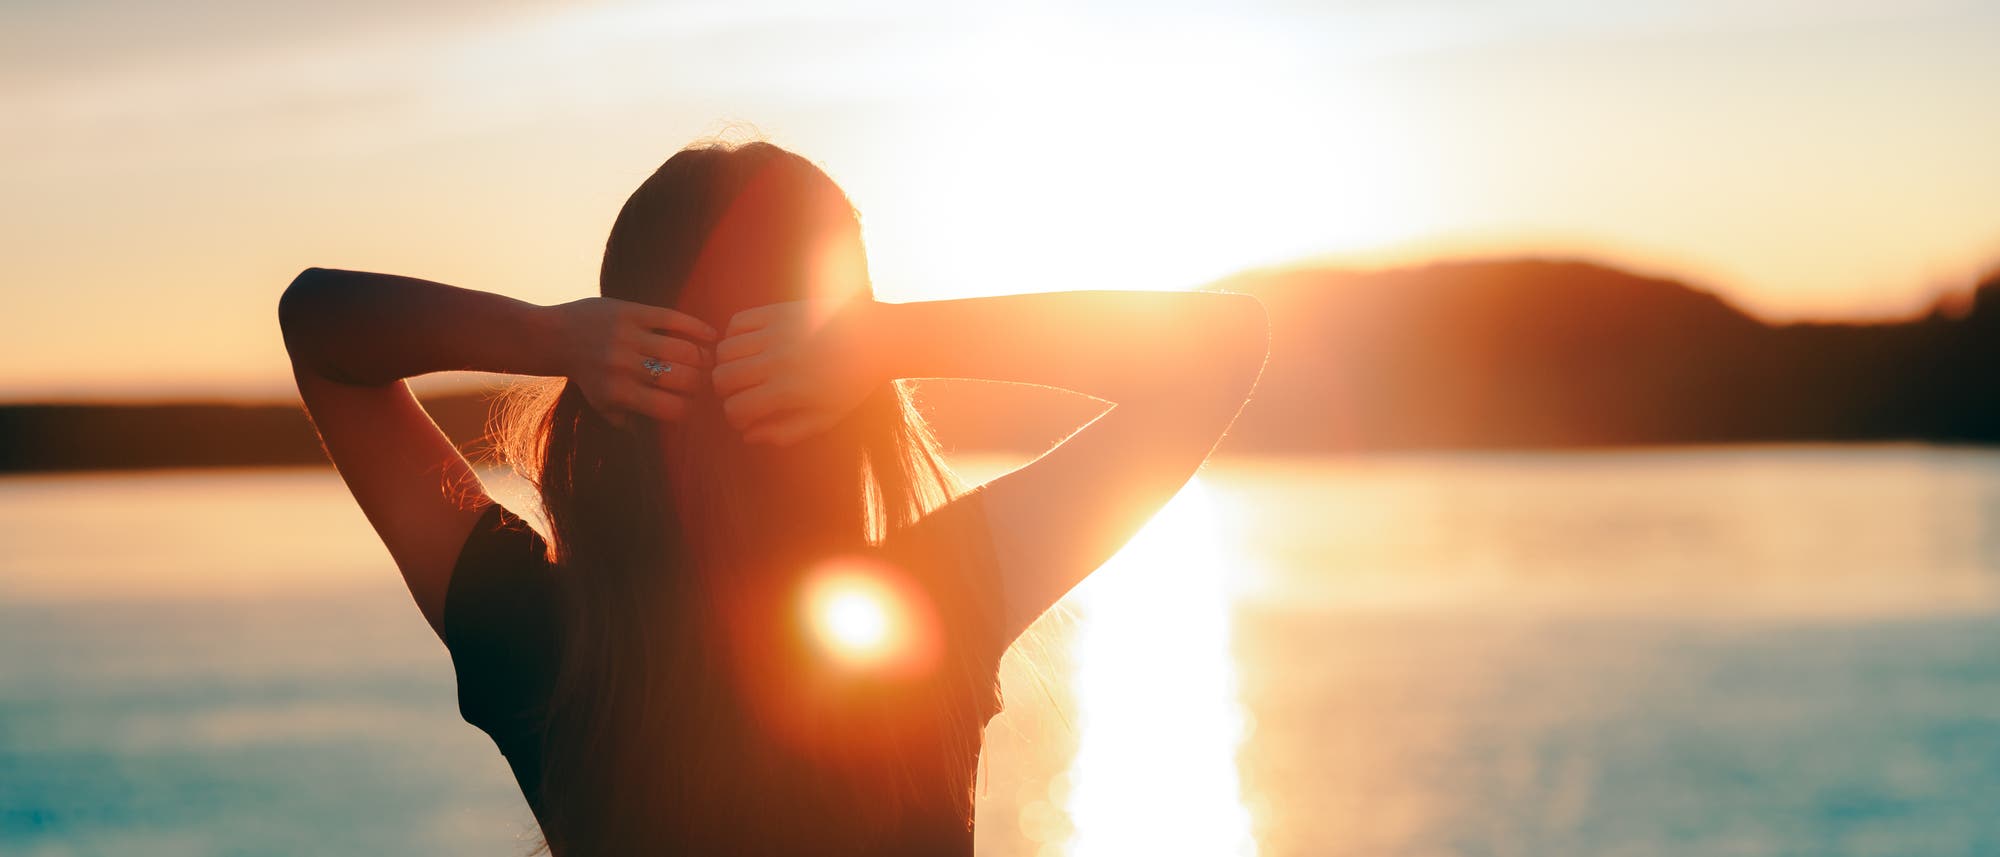 Man sieht eine Frau mit verschränkten Armen von hinten, sie genießt den Sonnenuntergang am See.